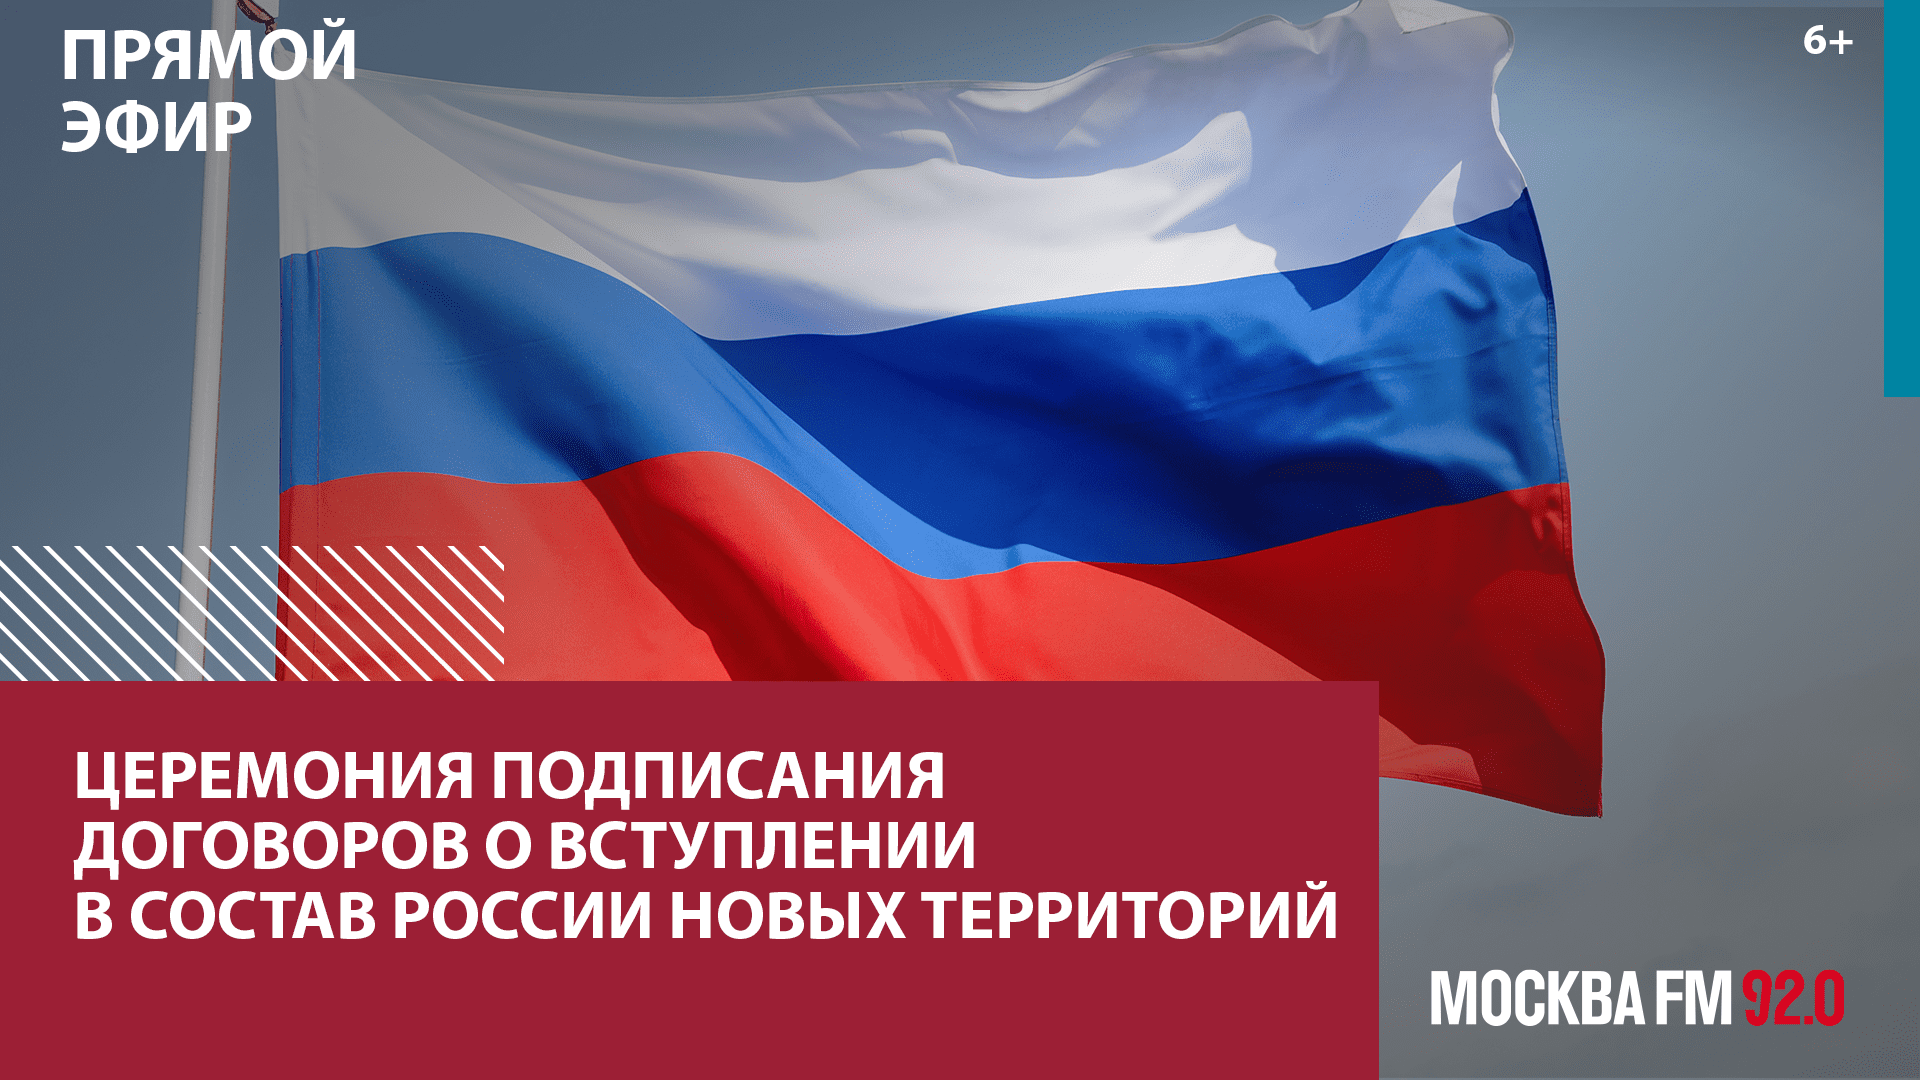 Подписание договоров о вступлении в состав РФ новых территорий — Москва FM